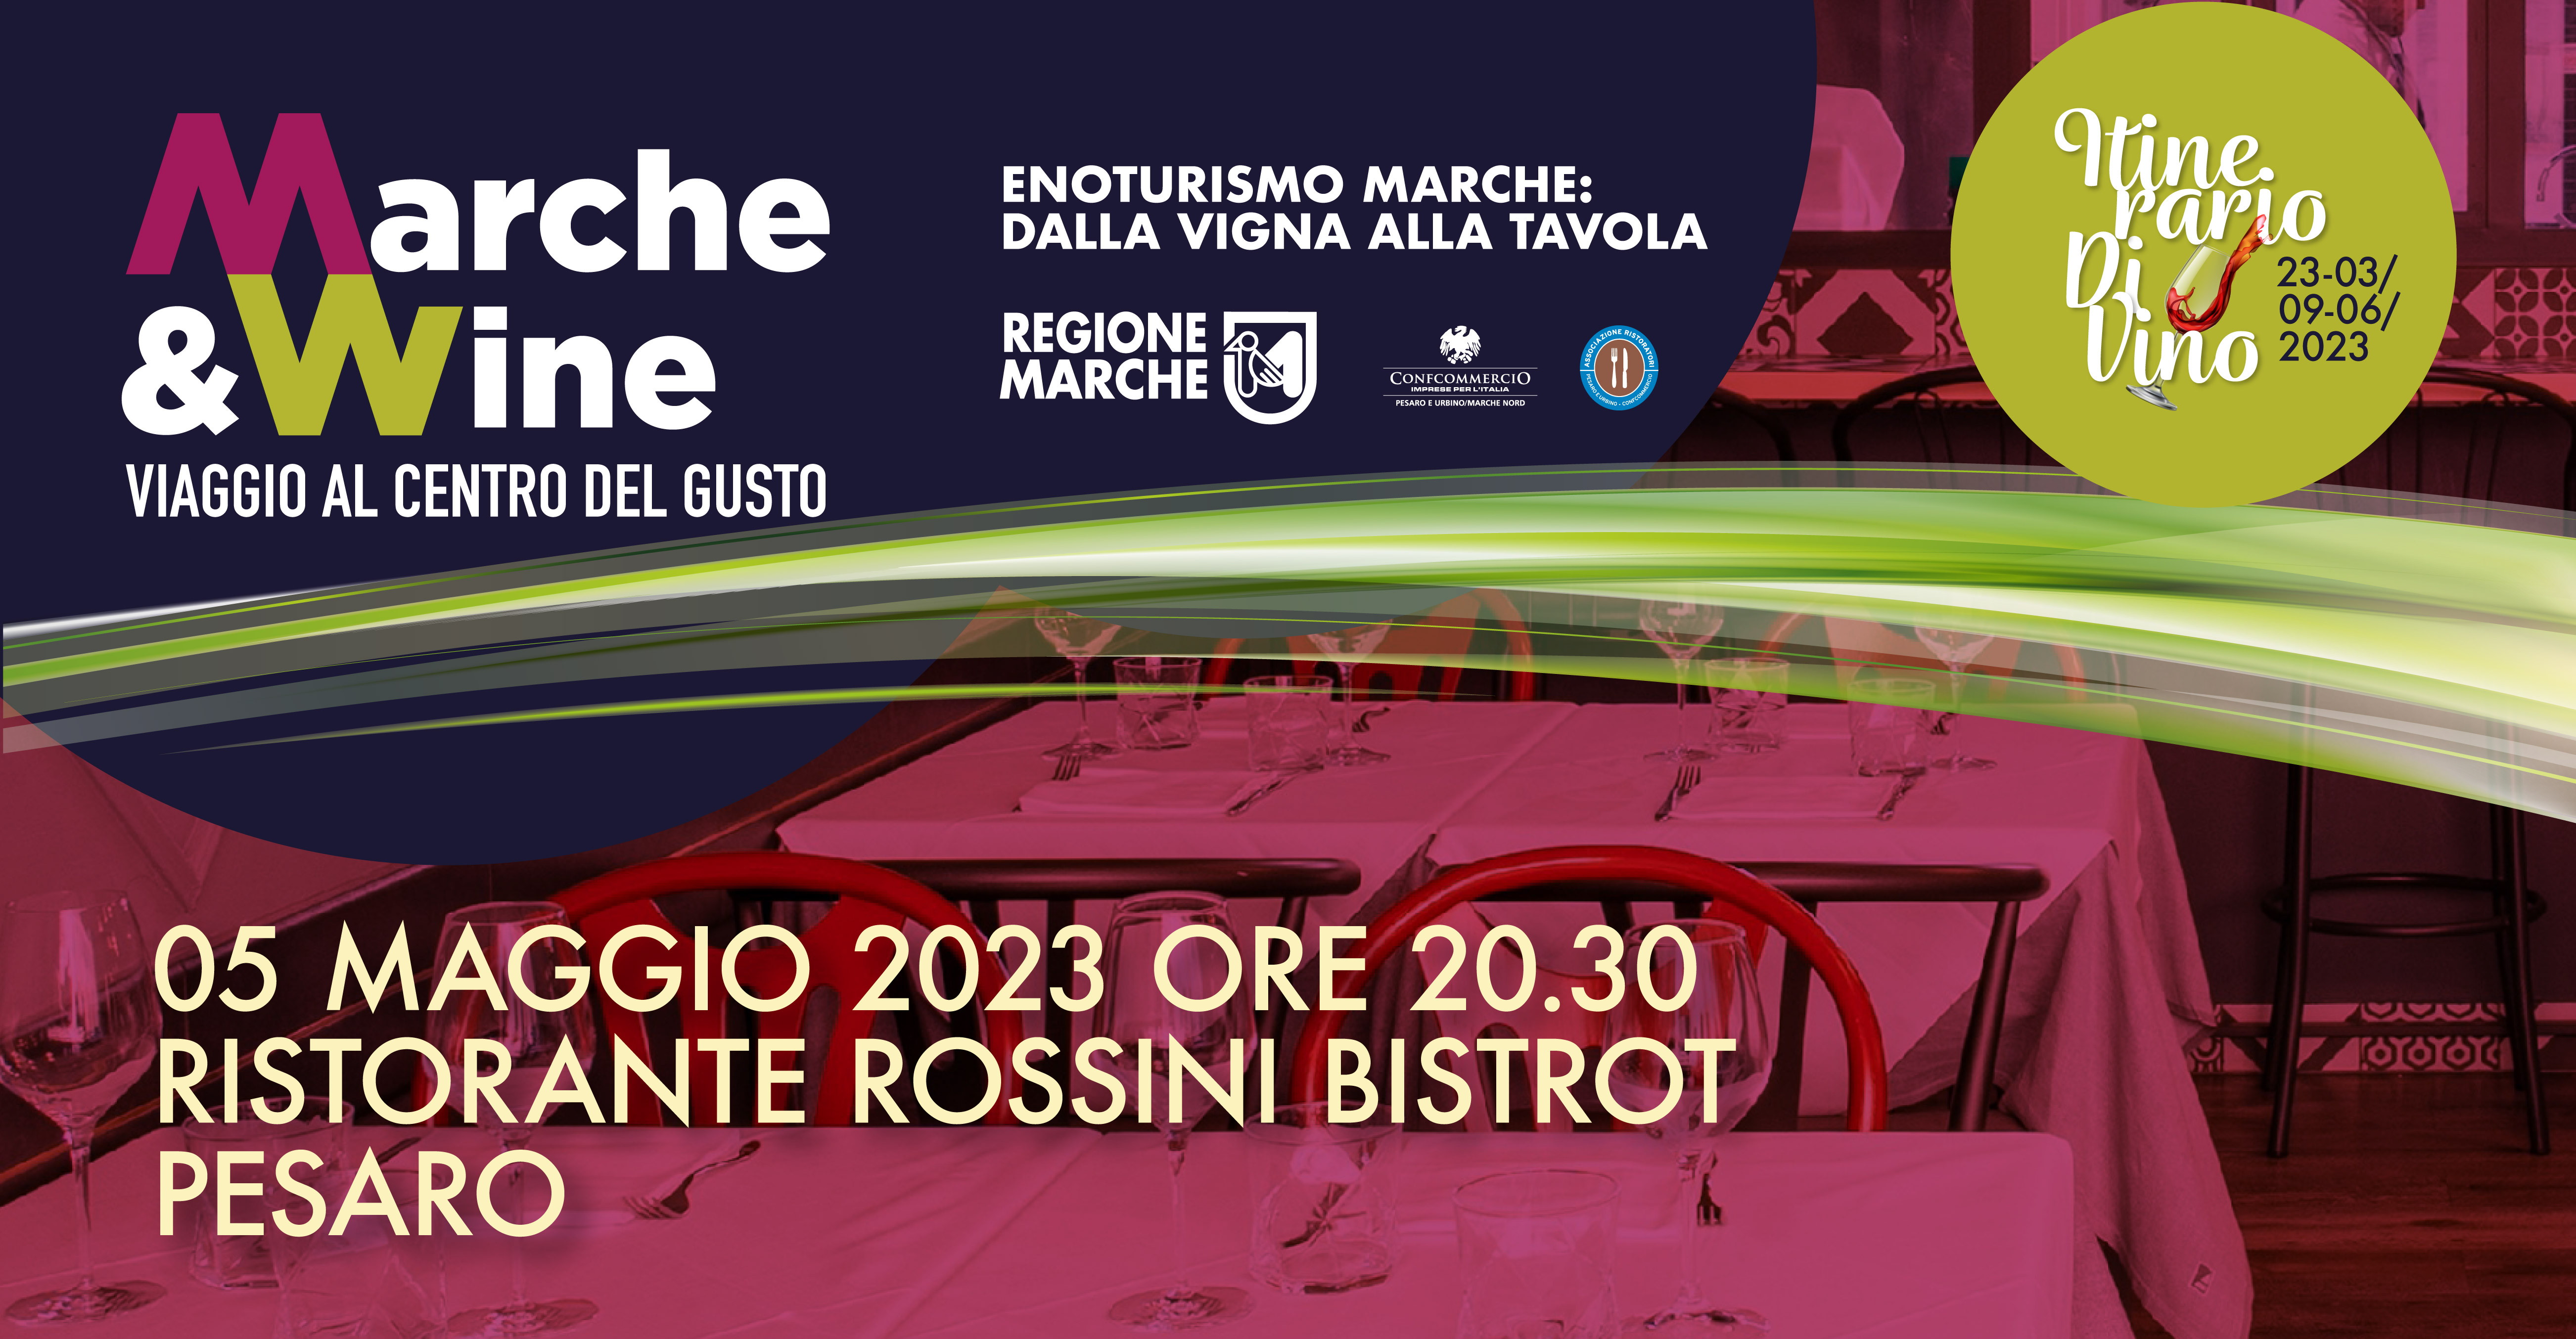 Marche&Wine da Rossini Bistrot